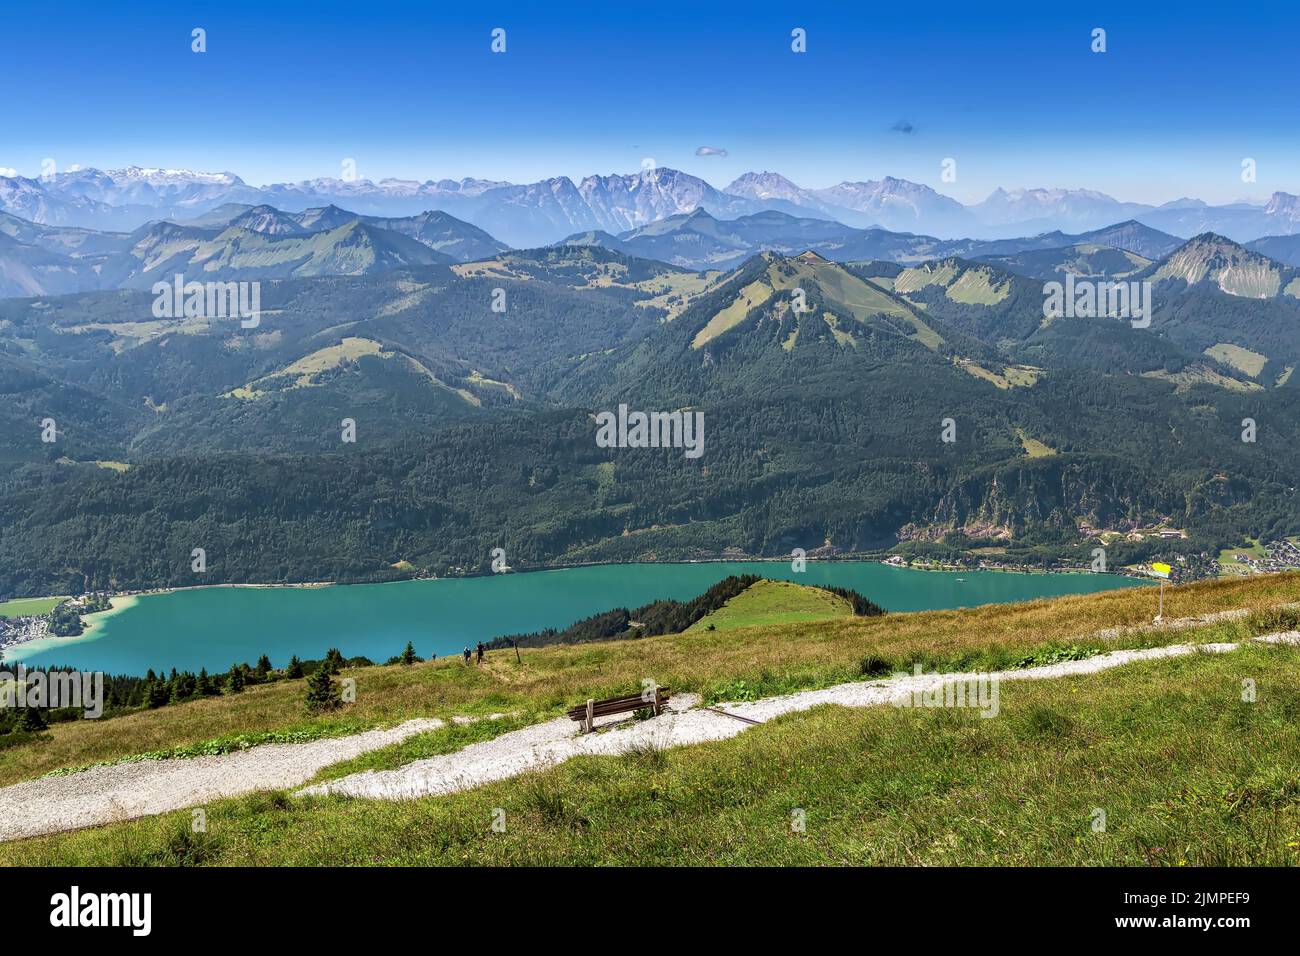 View from Schafberg mountain, Austria Stock Photo